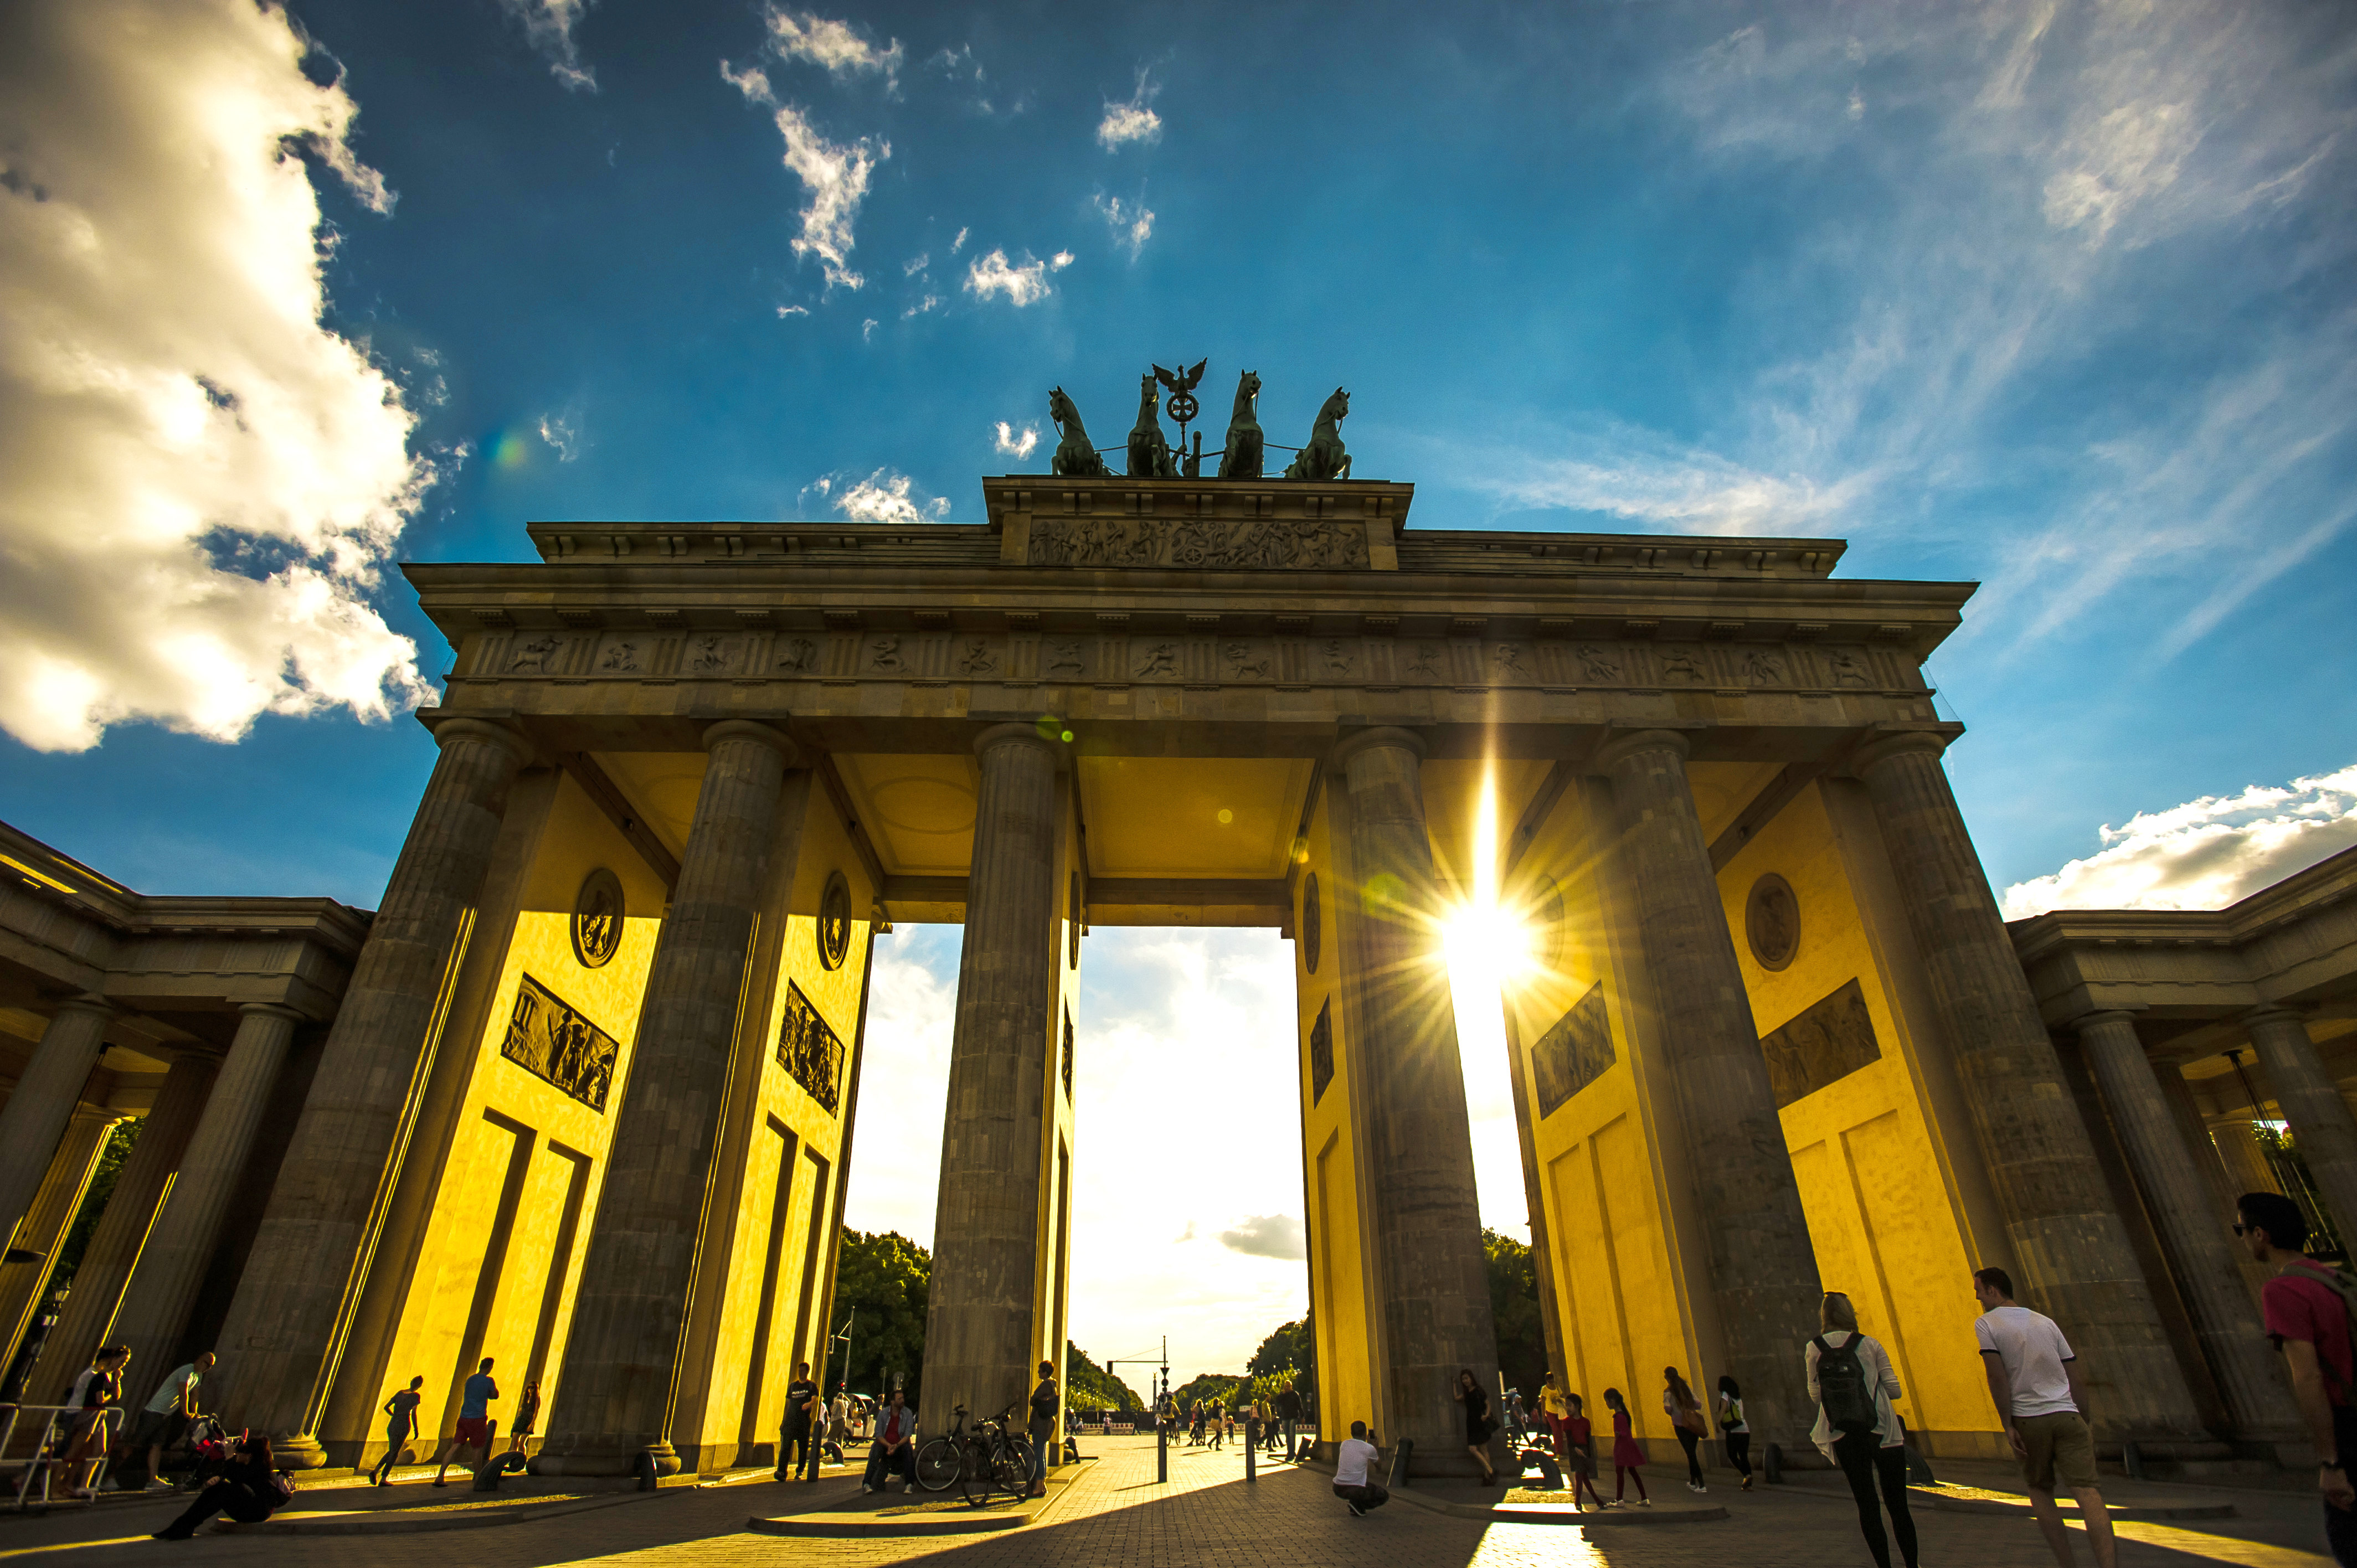 勃兰登堡门和巴黎广场 Brandenburg Gate